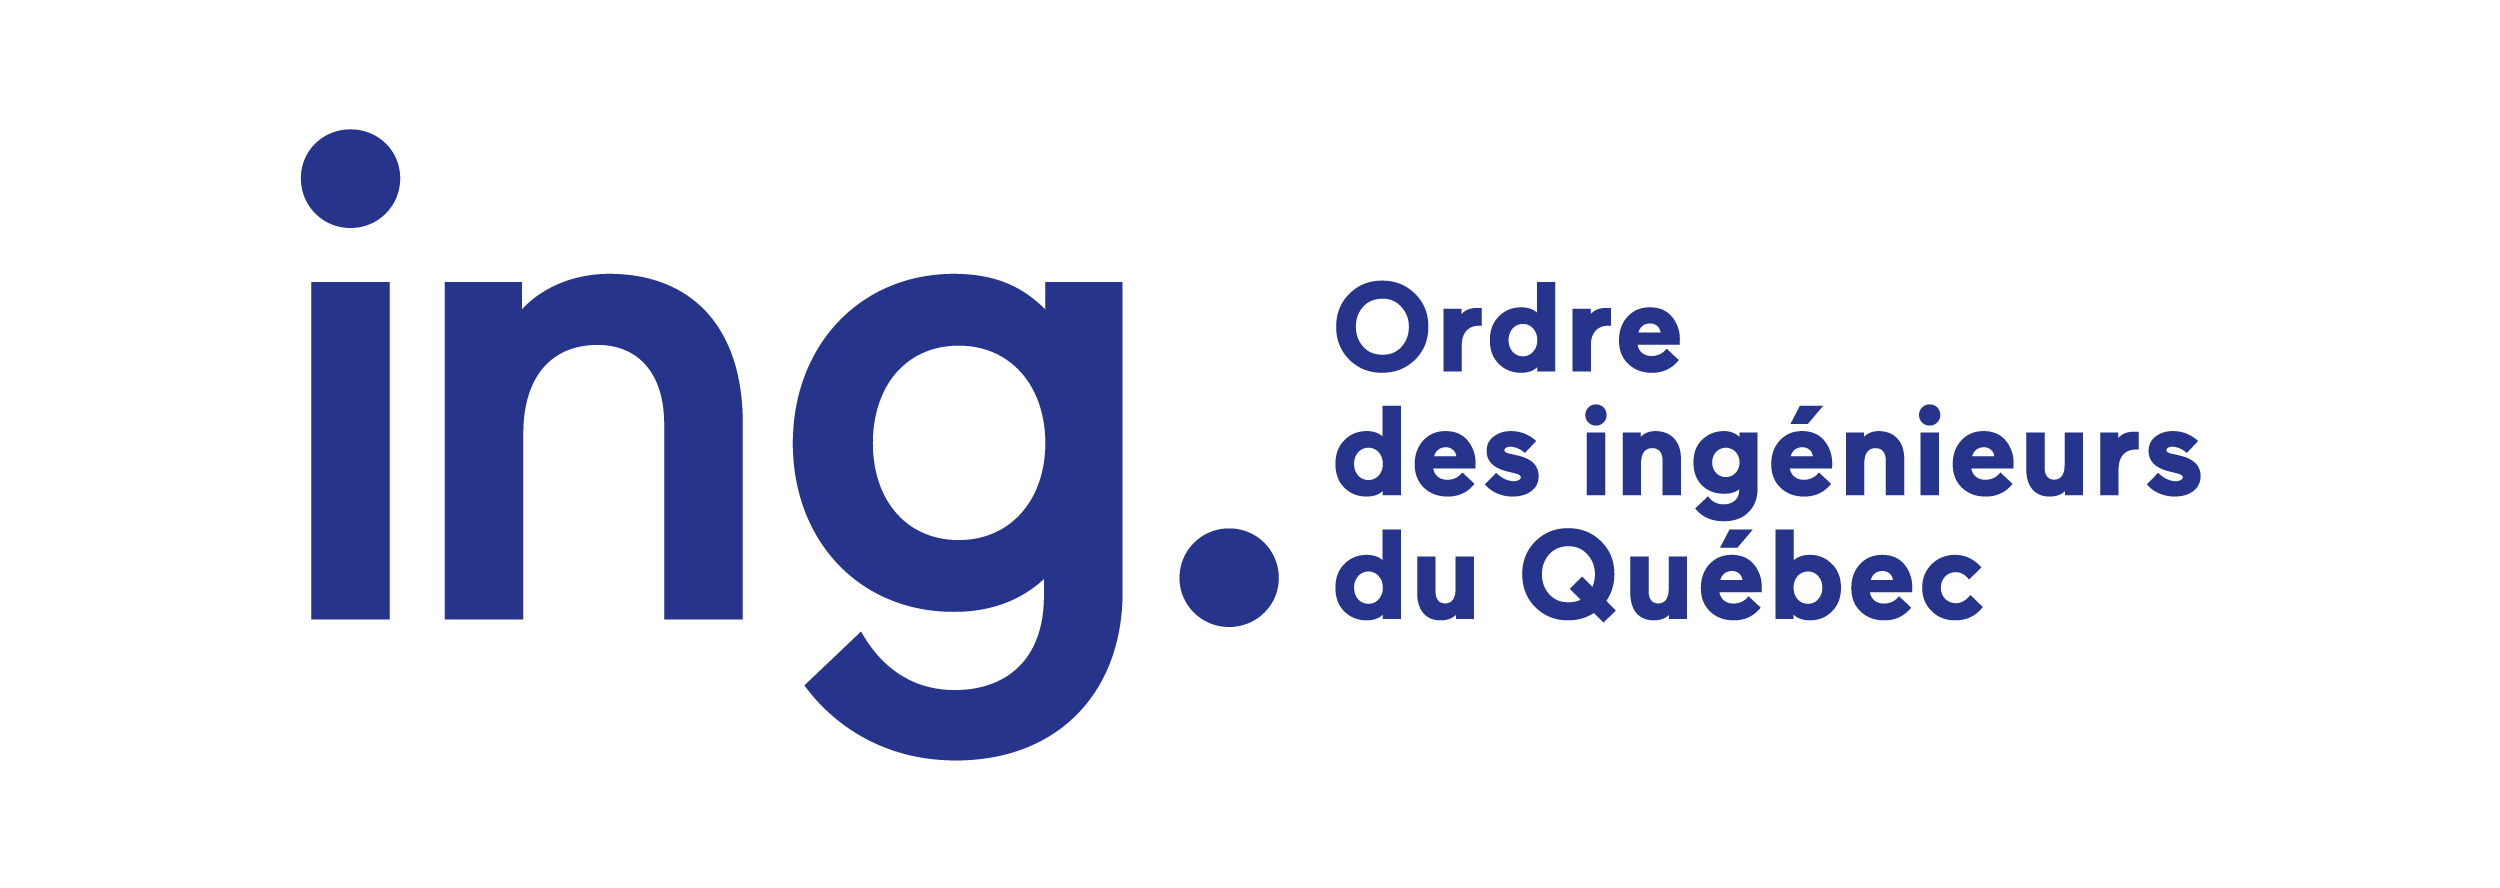 Ordres des Ingénieurs du Québec